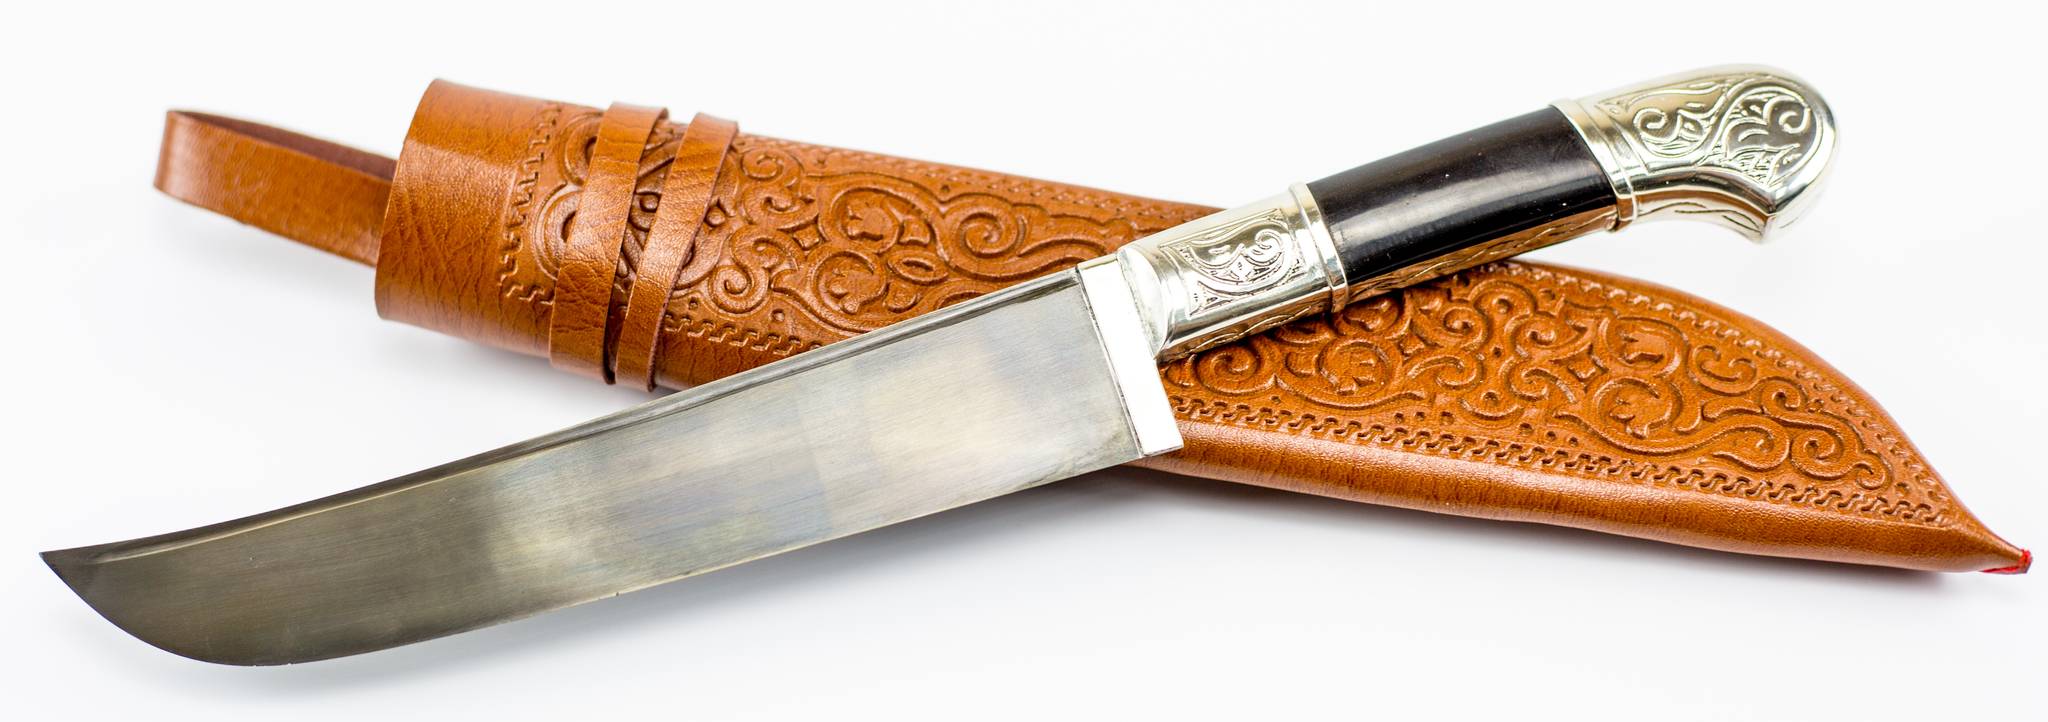 Якутский нож: история, особенности, советы по использованию